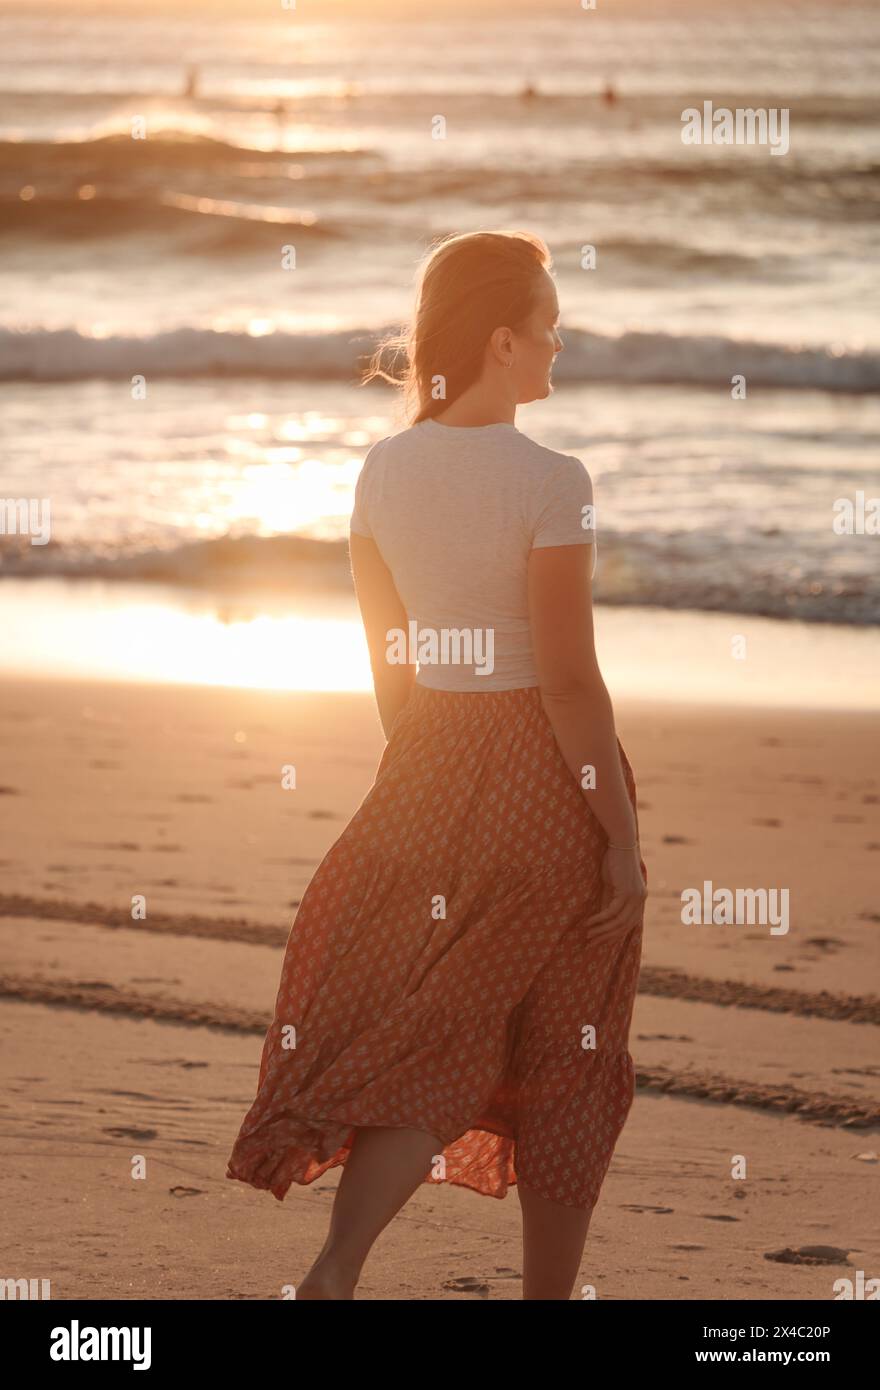 Eine schöne, einsame und nachdenkliche Frau am Meer, die in den Horizont blickt, am Strand im rötlichen Sonnenaufgang, mit ihrem Flowin Stockfoto